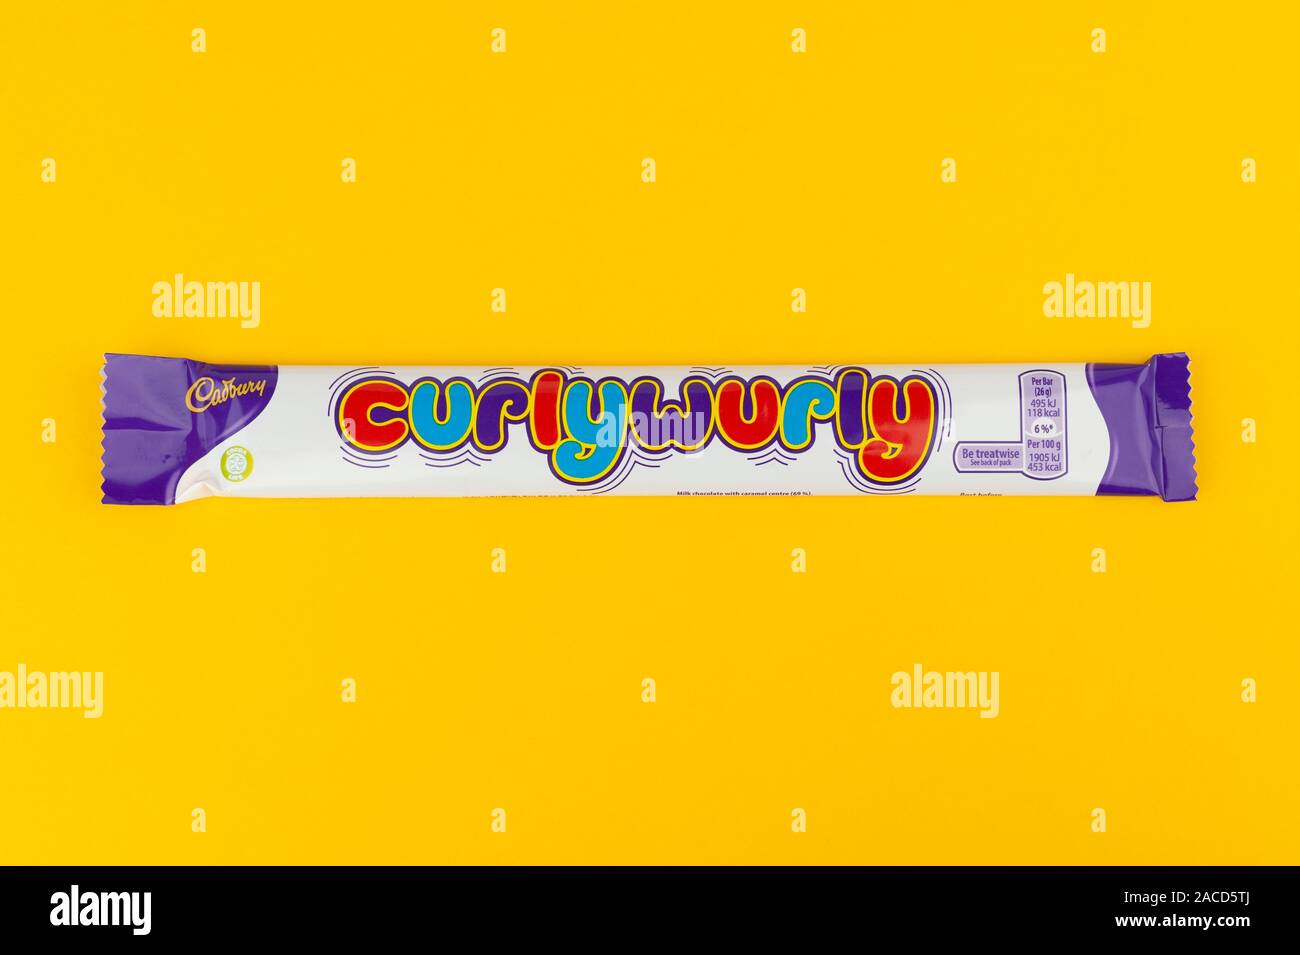 Una barra de chocolate Cadbury's Curly Wurly disparó sobre un fondo amarillo. Foto de stock